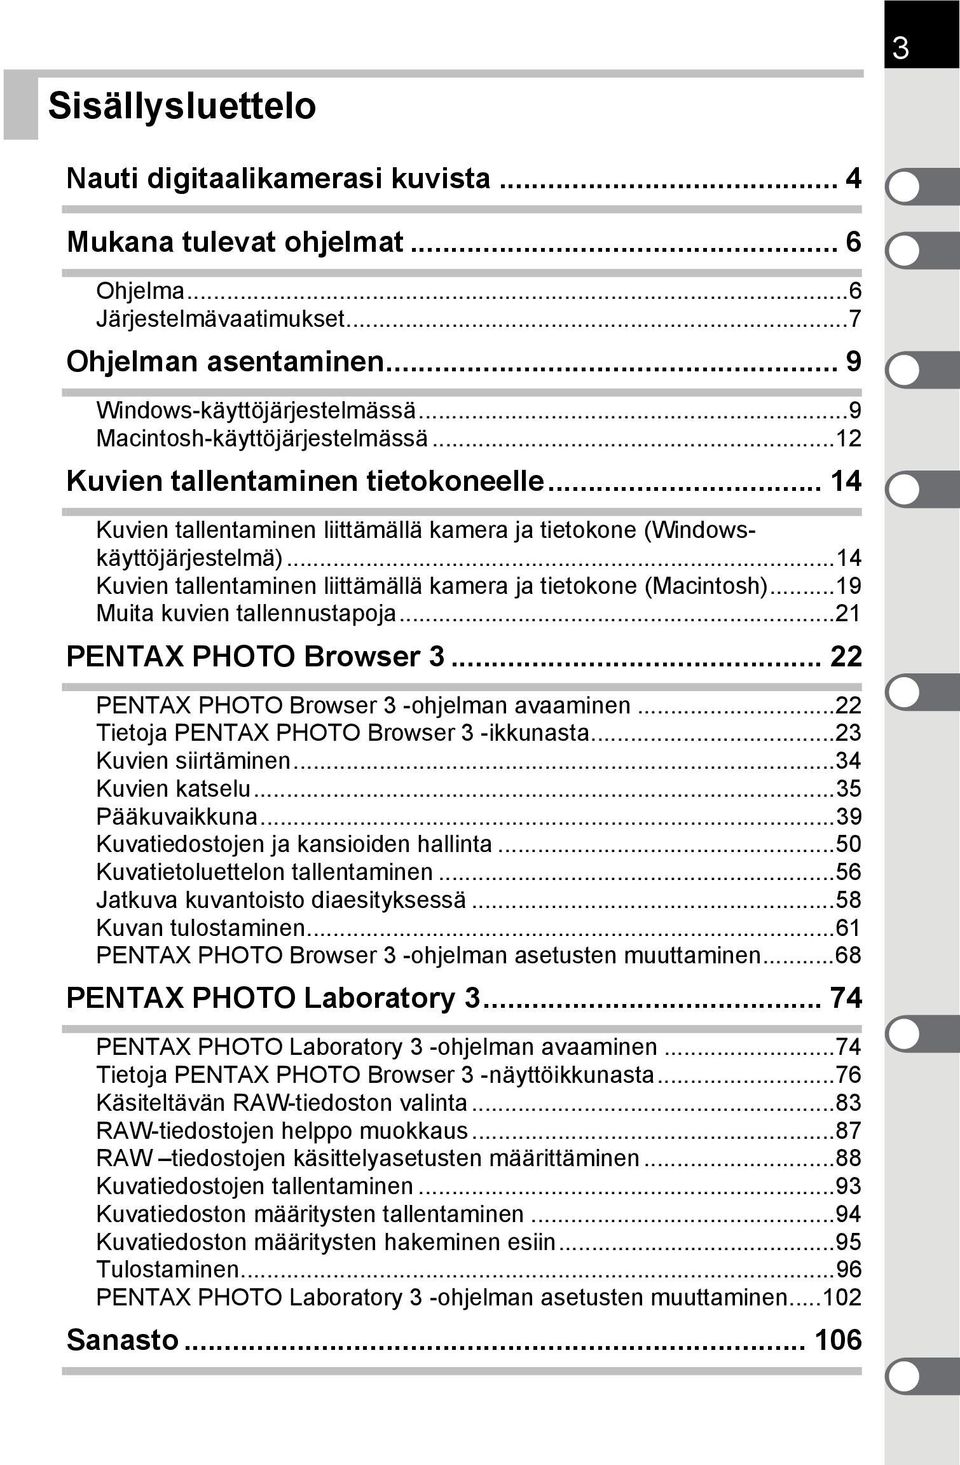 ..14 Kuvien tallentaminen liittämällä kamera ja tietokone (Macintosh)...19 Muita kuvien tallennustapoja...21 PENTAX PHOTO Browser 3... 22 PENTAX PHOTO Browser 3 -ohjelman avaaminen.